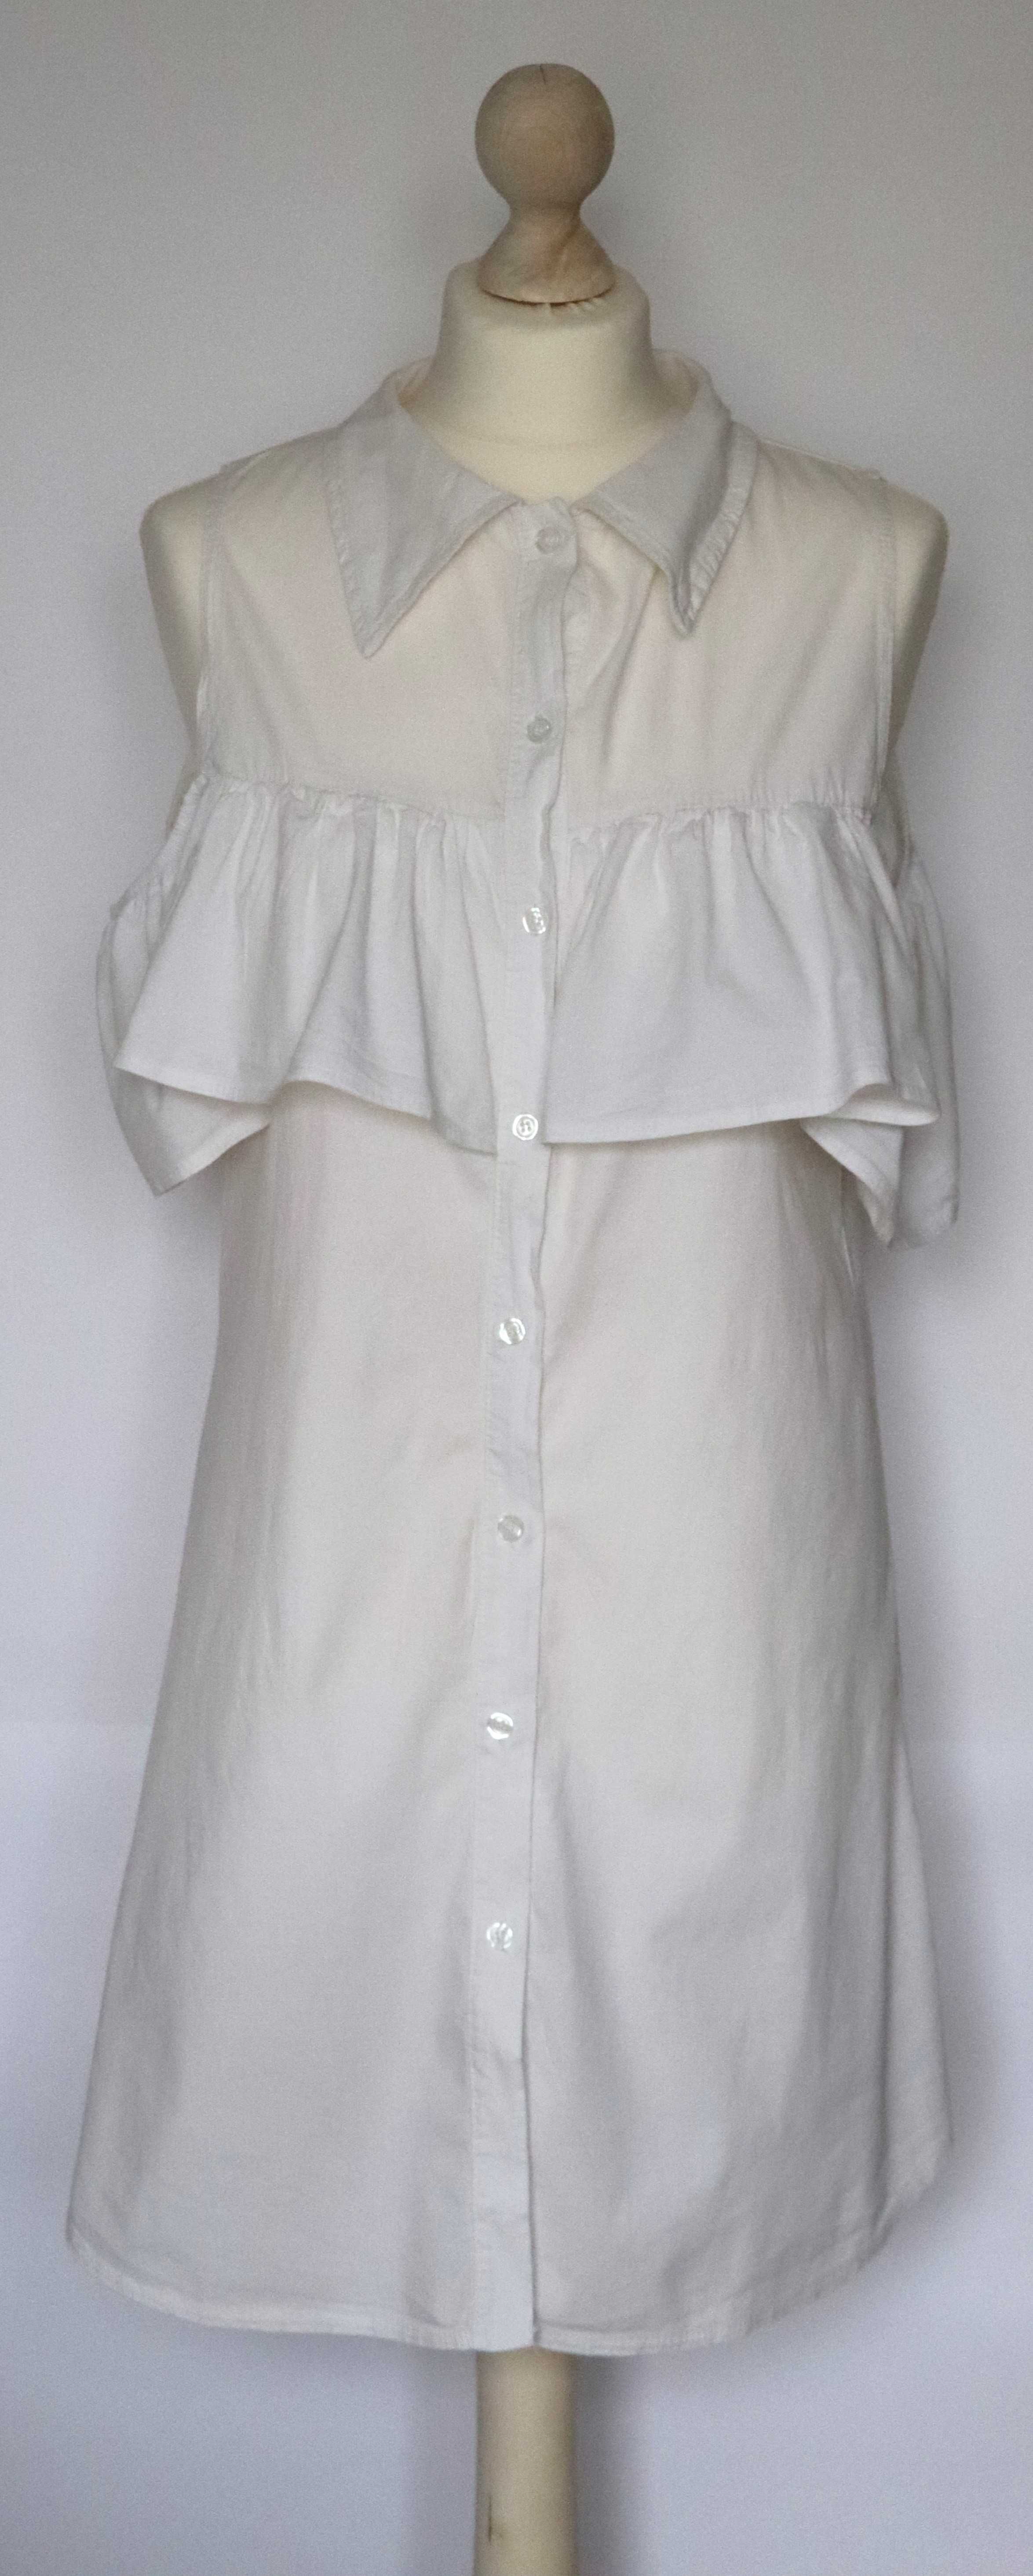 Biała sukienka koszulowa z falbaną, bawełna - wiosna / lato